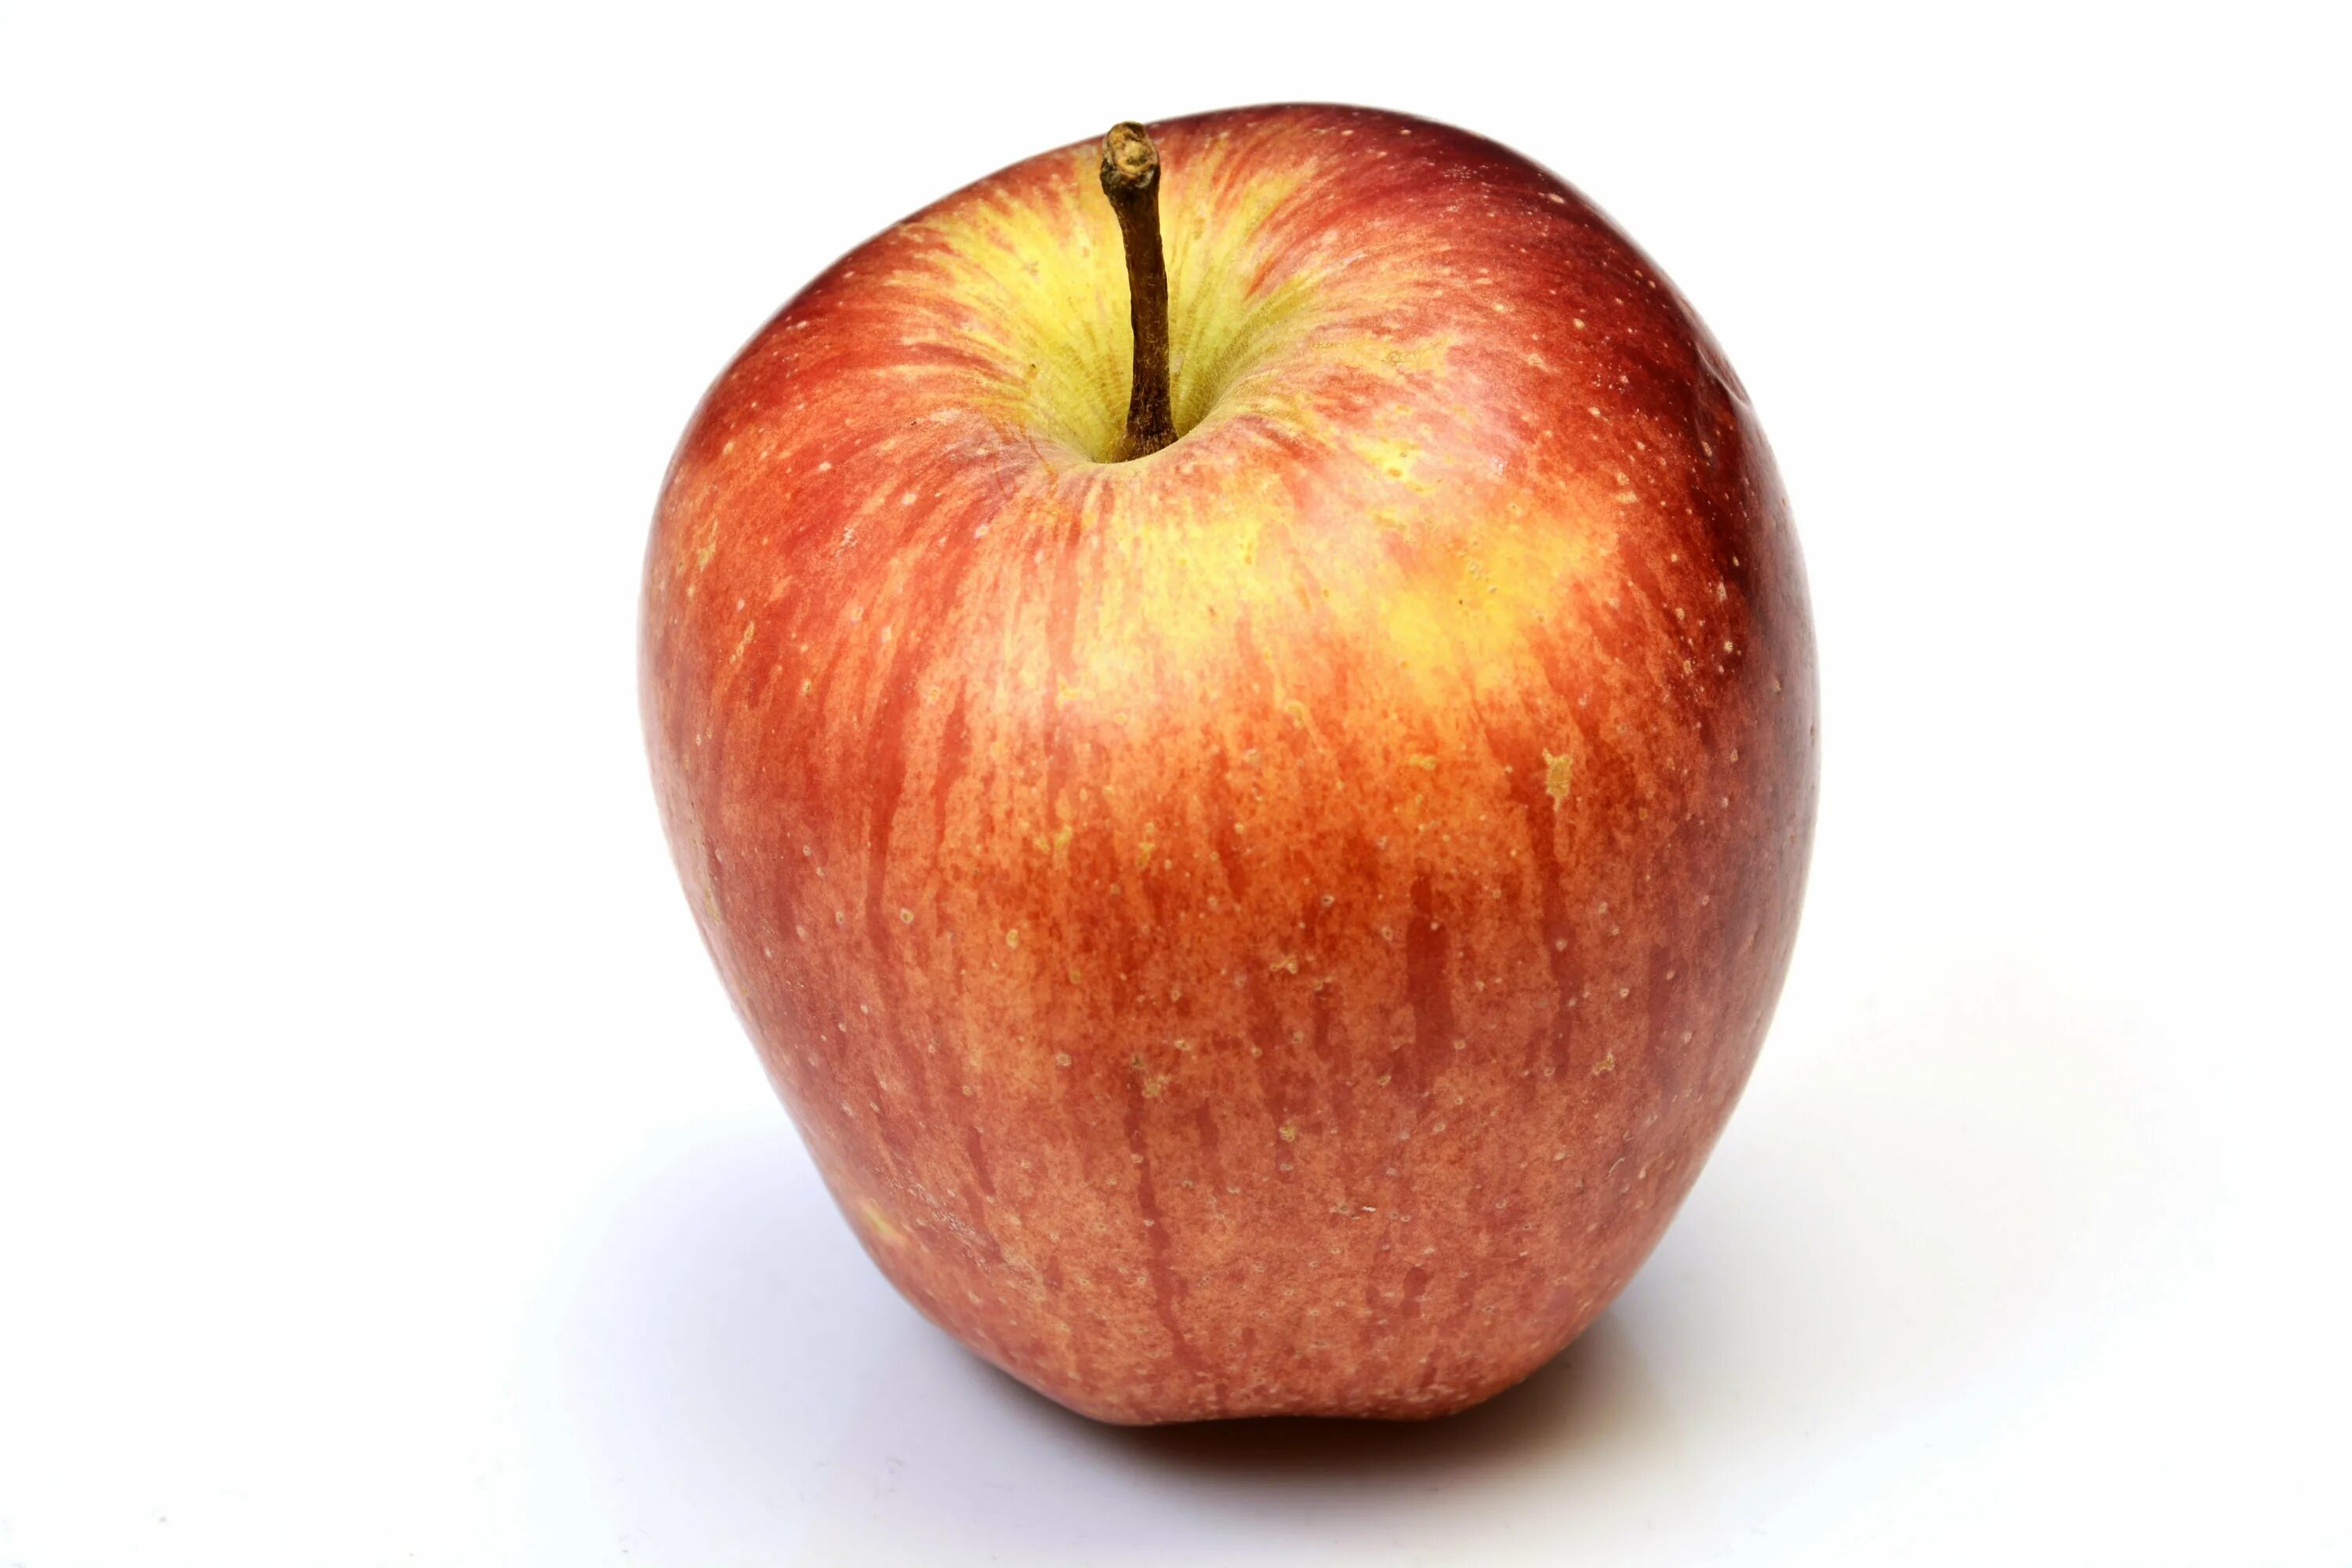 1 2 яблоко. Яблоко. Фото яблока на белом фоне. Красное яблоко на белом фоне. Одно яблоко.